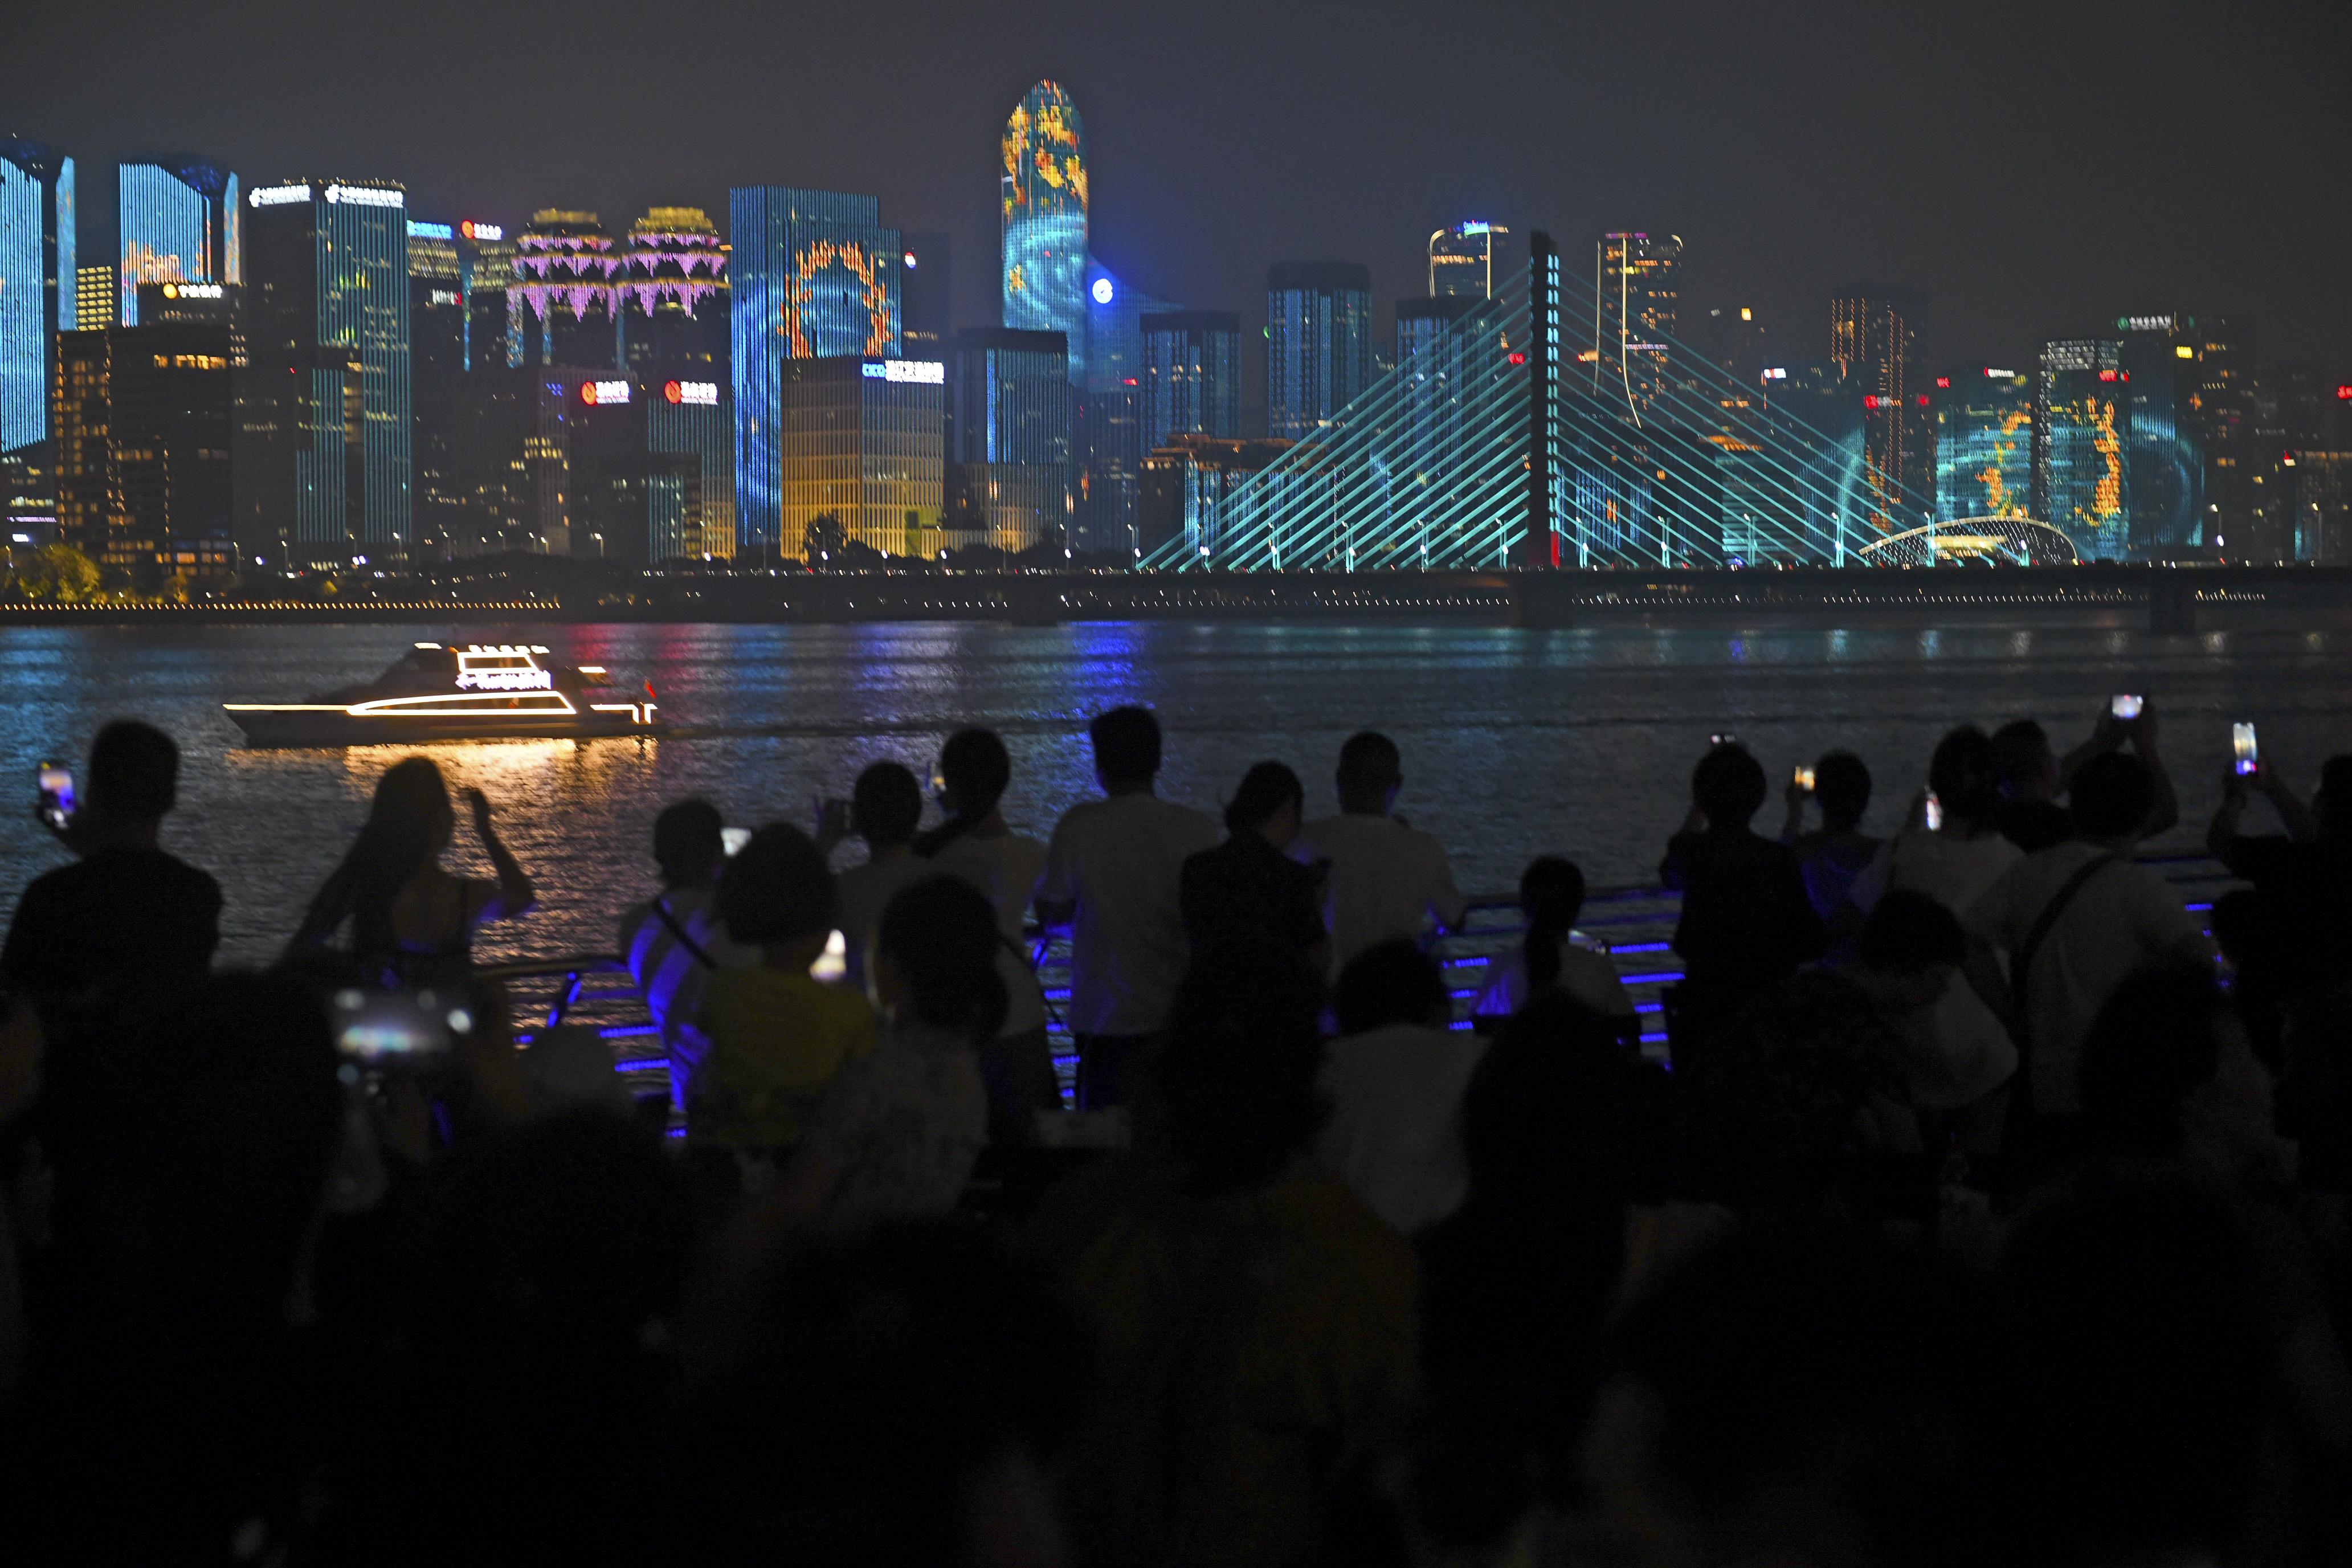 Mnoho místních obyvatelů města Hangzhou a turistů fotí nádherné světelné show na obou stranách řeky Qiantang. (Zdroj: Pan Di/Bright Photos)